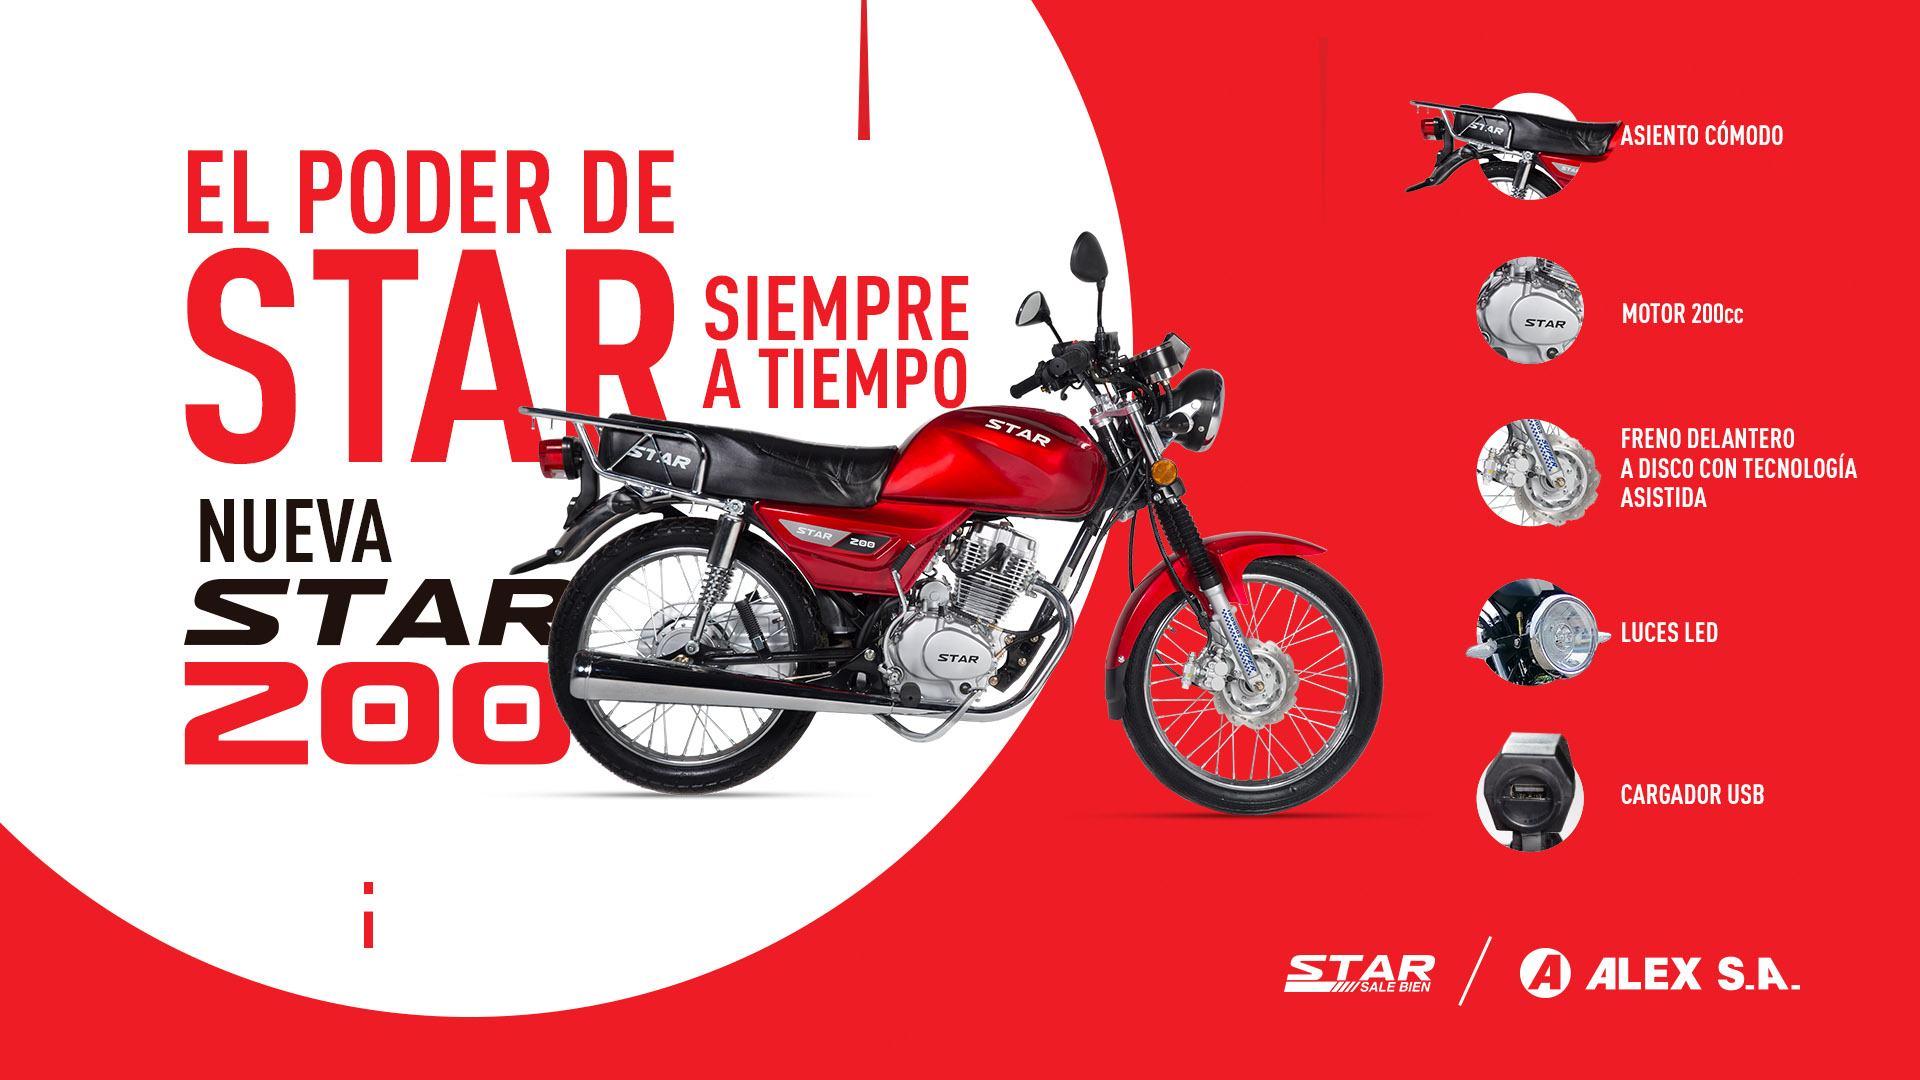 Nuevo modelo de moto STAR 200 de ALEX S.A.